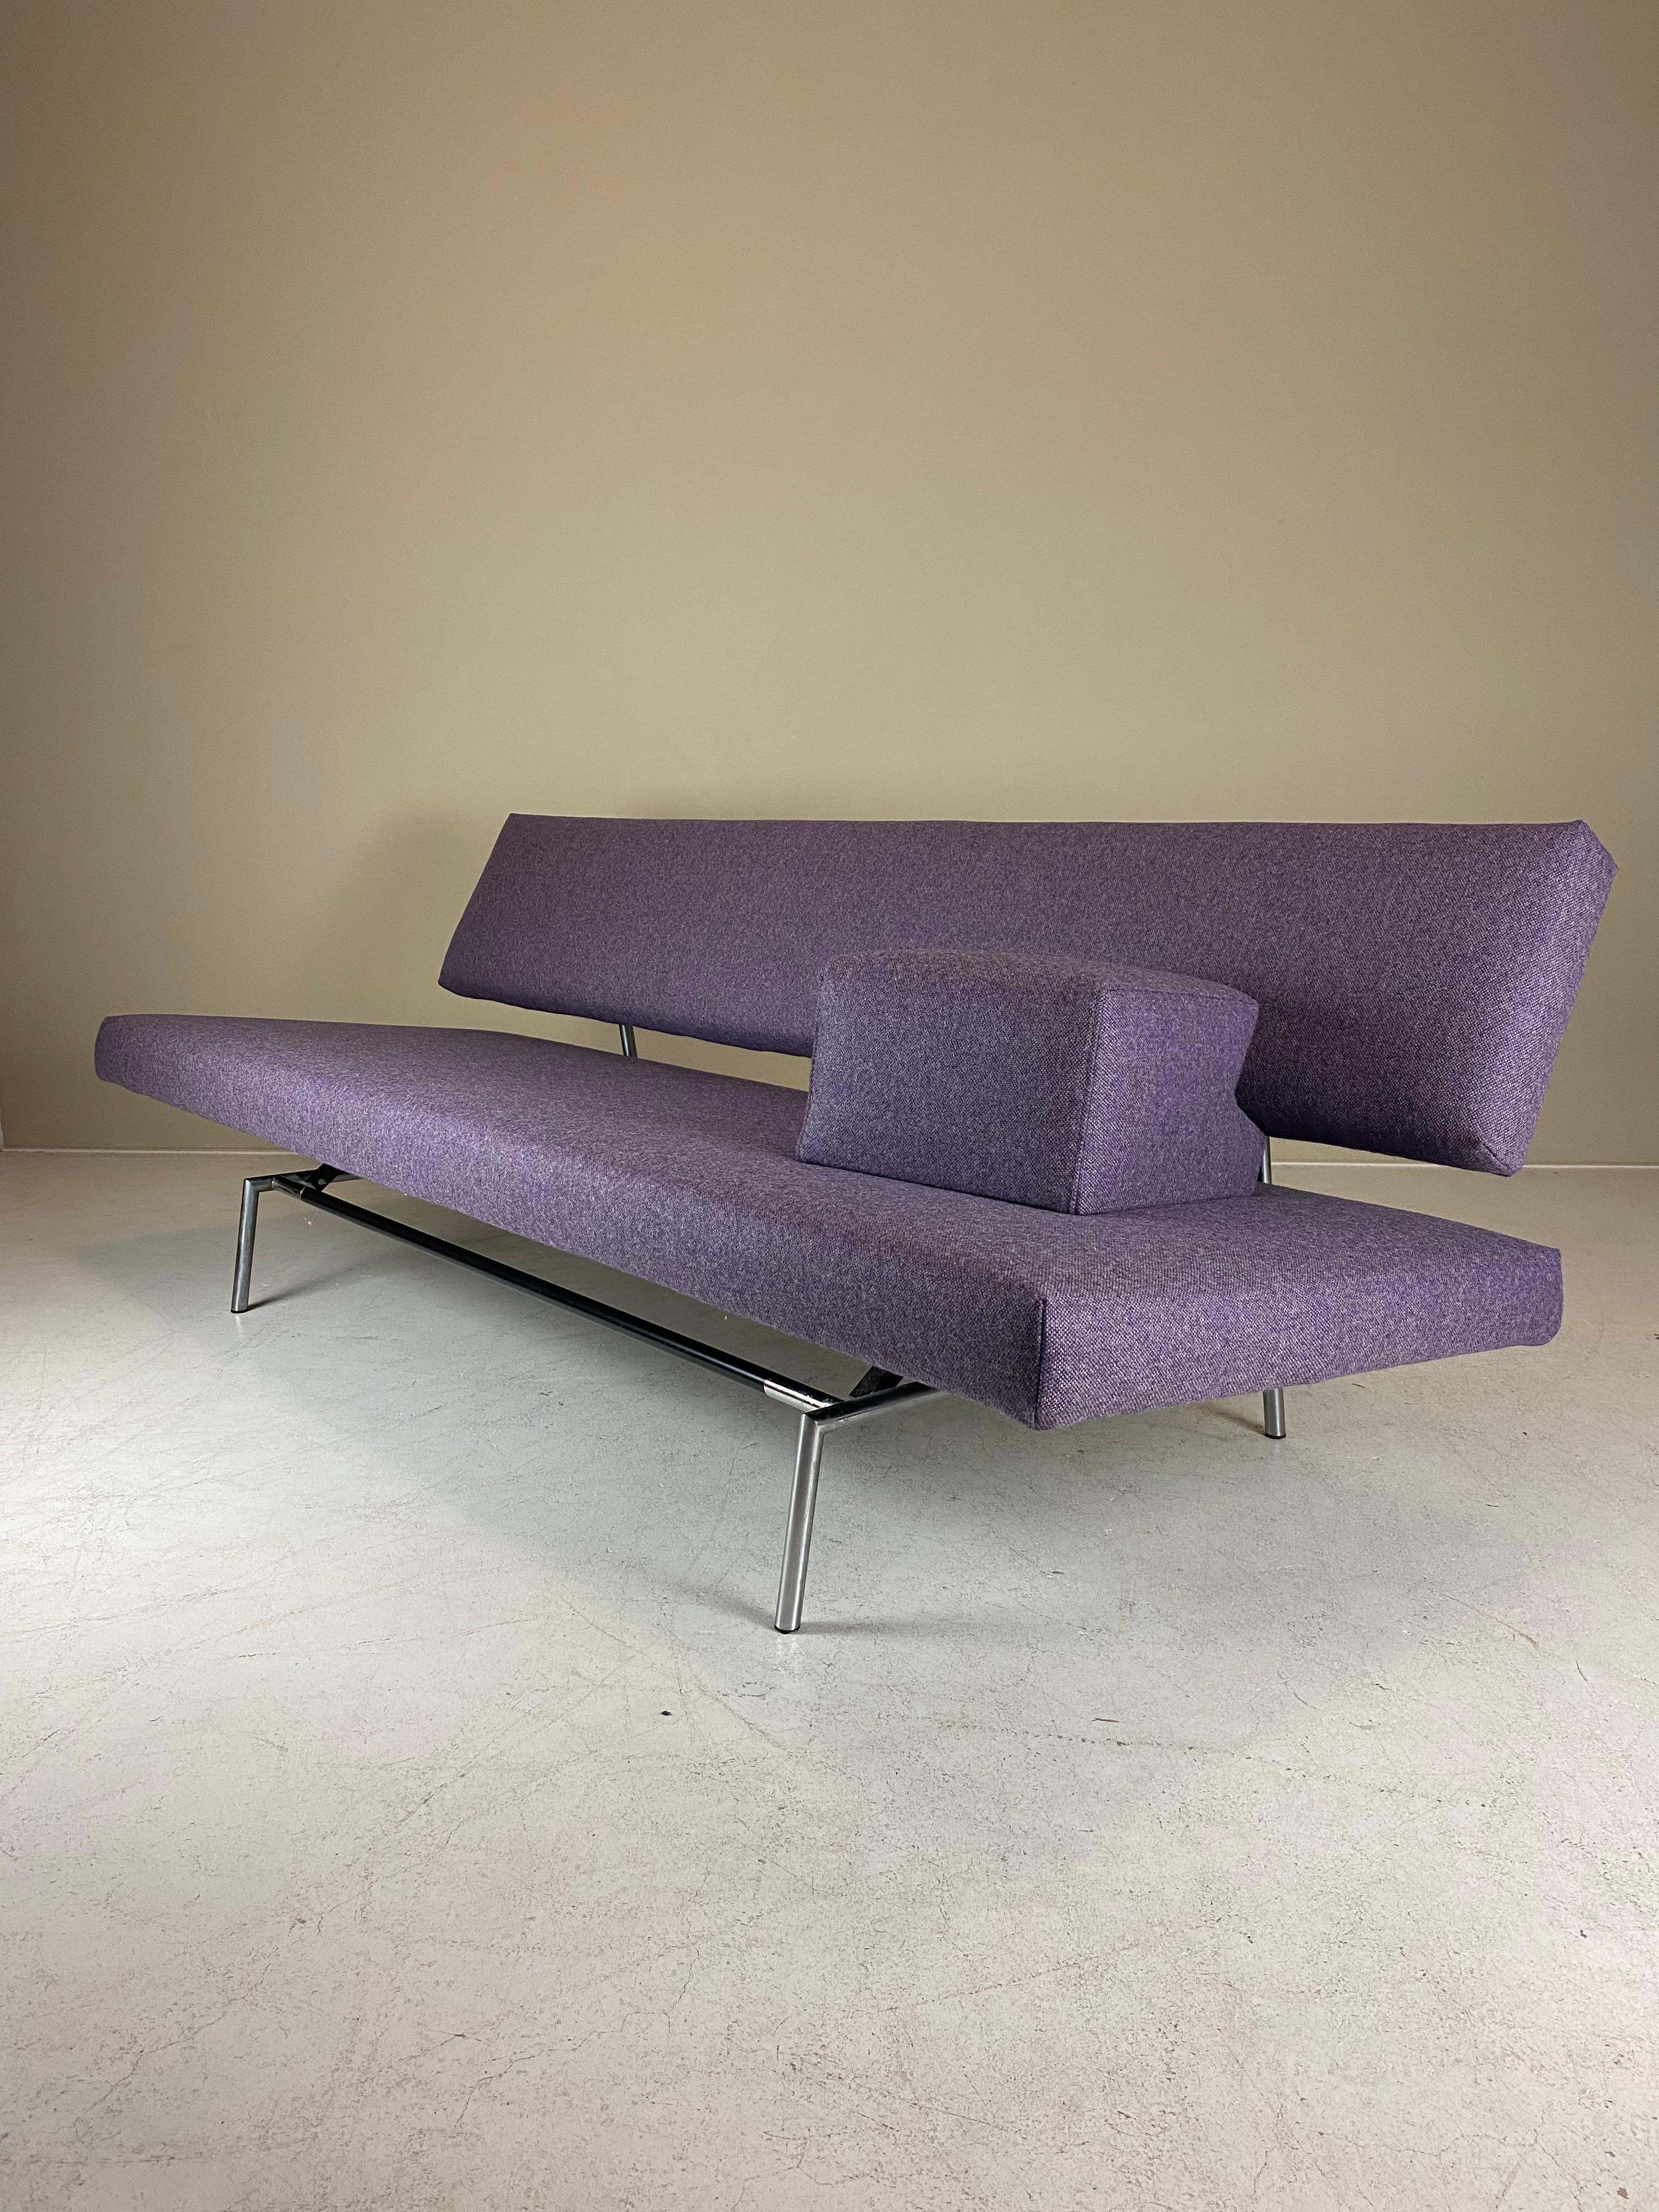 Nous vous proposons un canapé / canapé-lit / lit de jour BR02 de Martin Visser pour 't Spectrum. Conçu en 1960, ce canapé minimaliste se transforme en lit d'un simple geste. Le modèle n°. BR02 fait référence à la monture ronde en métal - l'édition